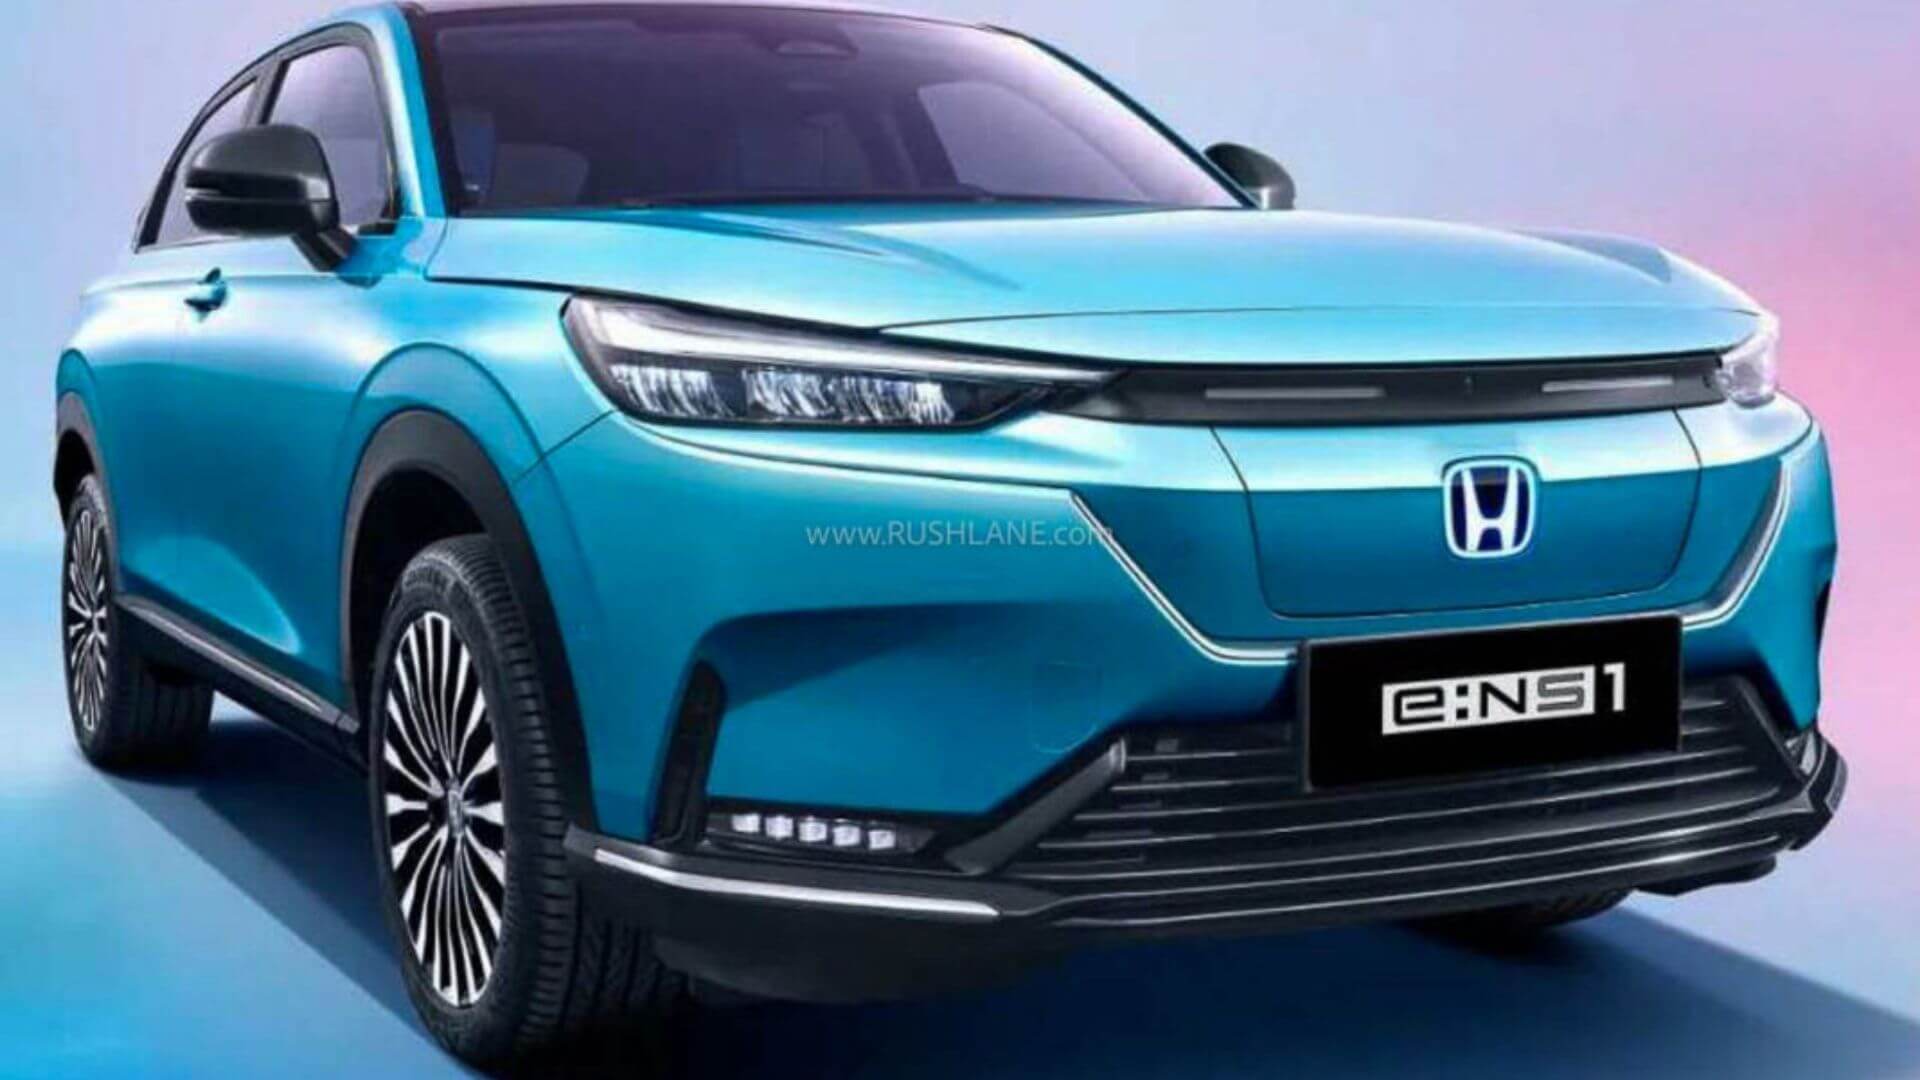 https://e-vehicleinfo.com/new-honda-electric-suv-2023-concept-unveiled-know-details/